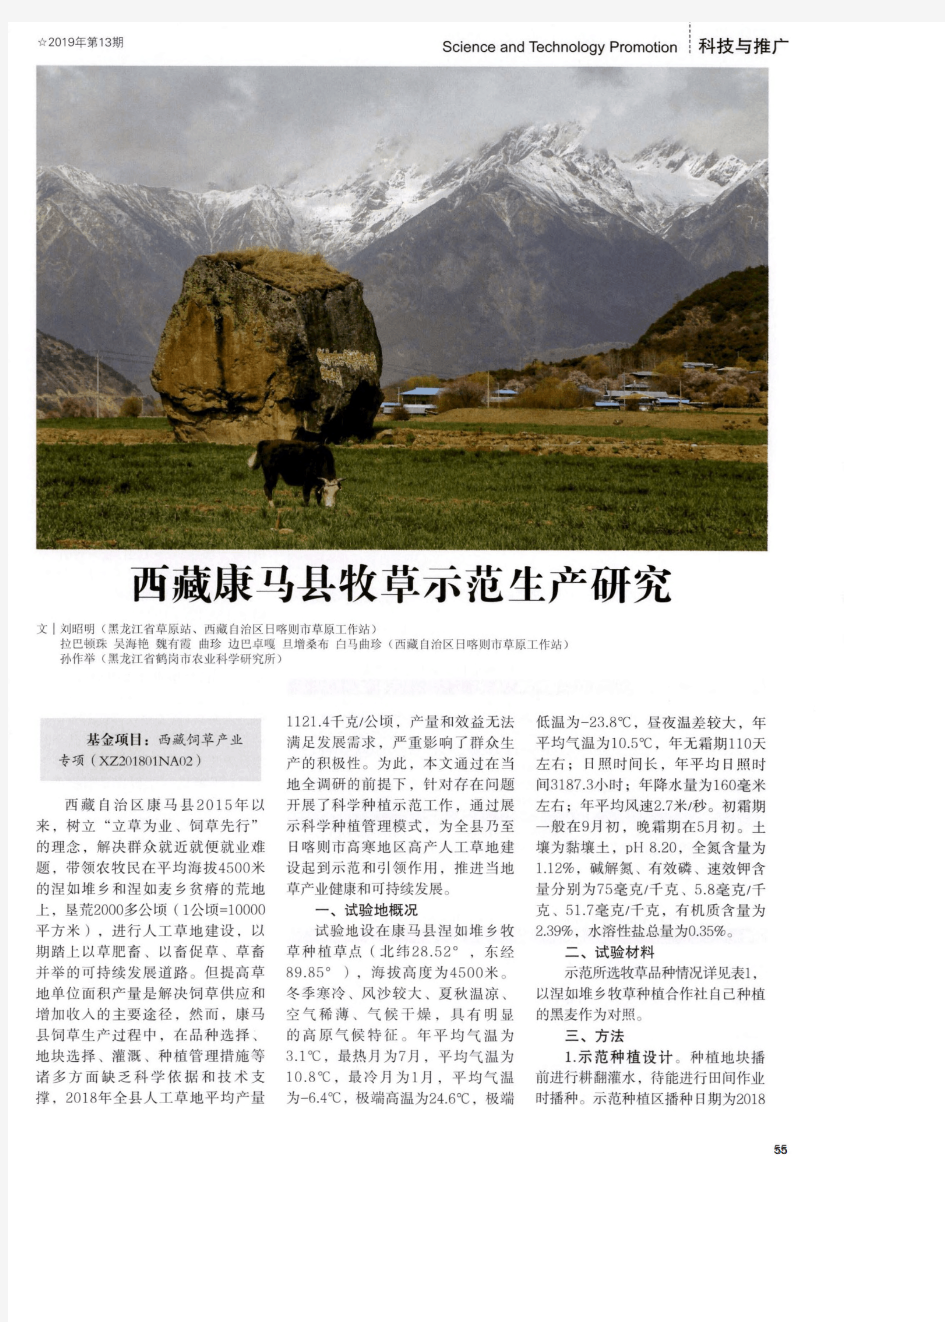 西藏康马县牧草示范生产研究